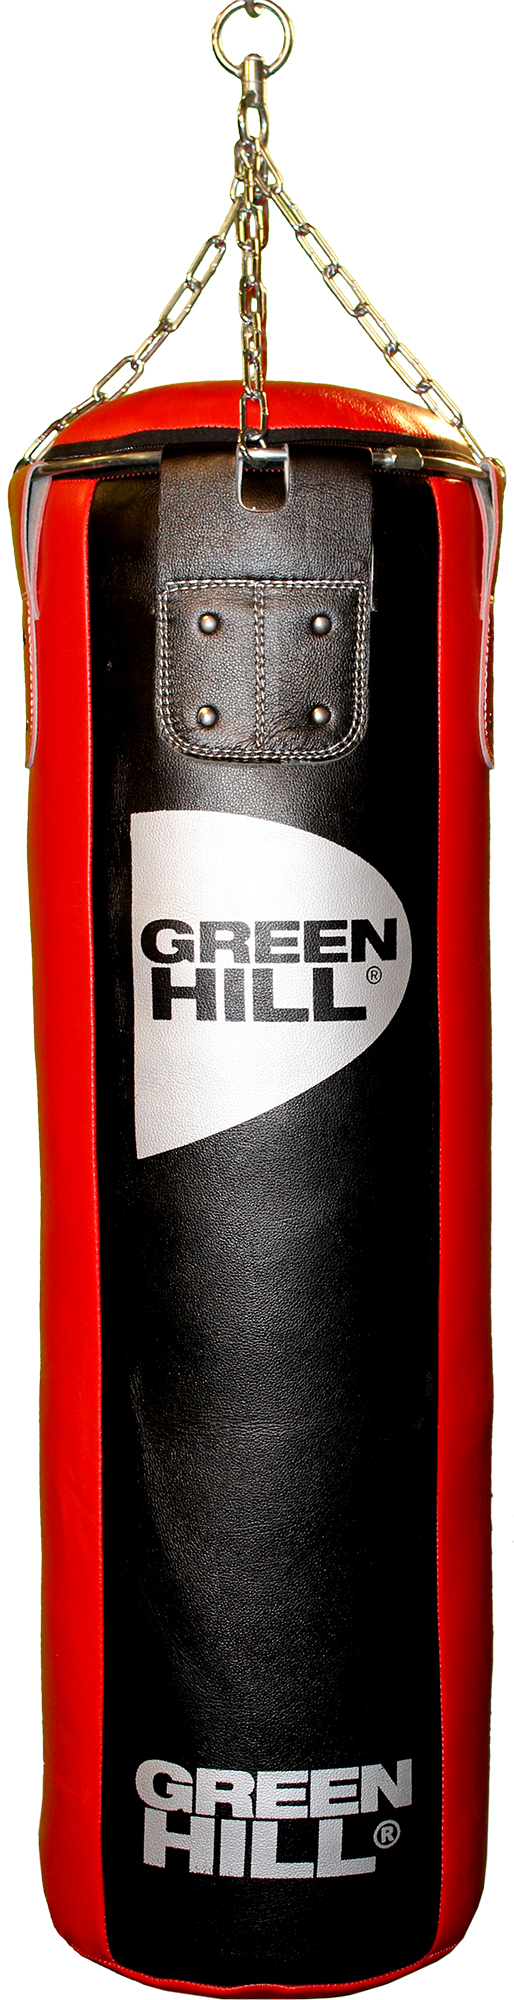 Green Hill Мешок набивной Green Hill, 47 кг